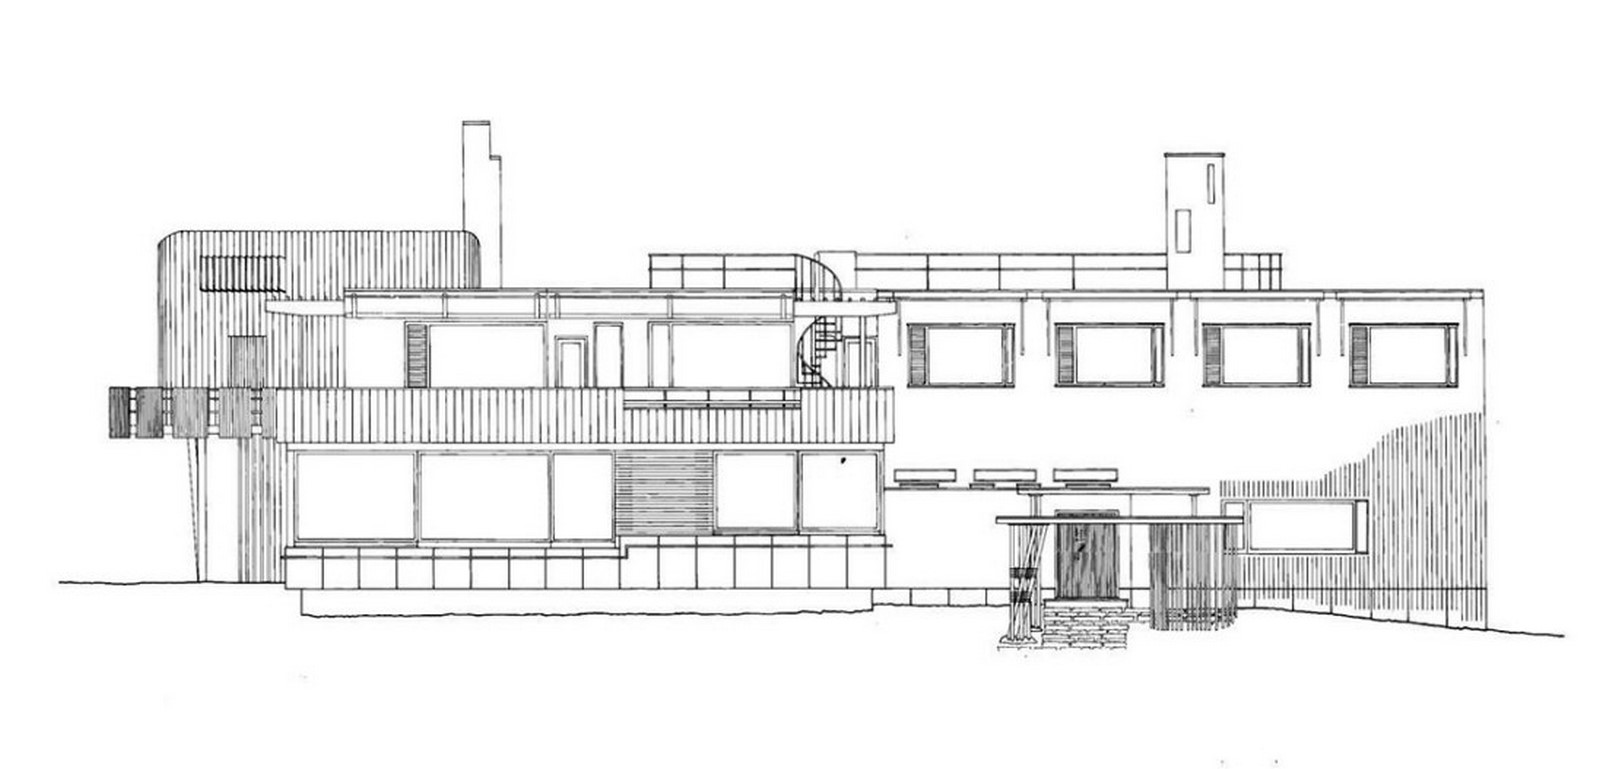 Villa Mairea by Aino Aalto and Alvar Aalto: The Iconic House Sheet3